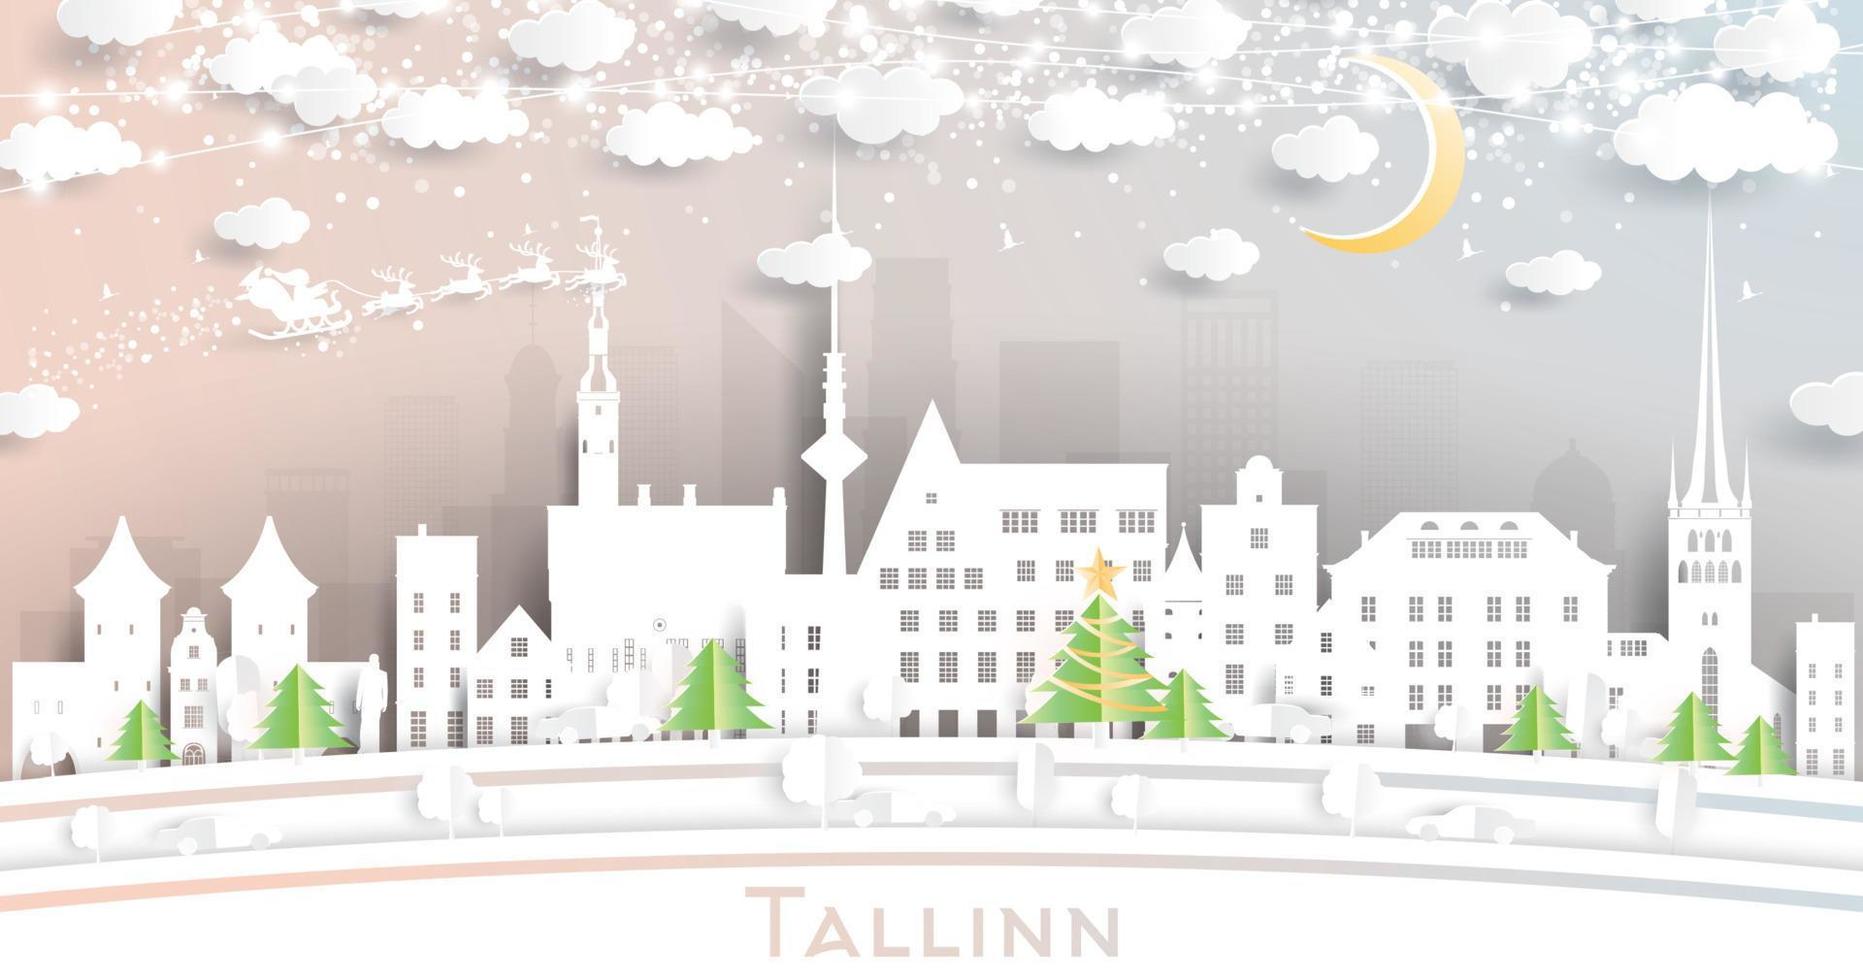 Tallinn Estland stad horizon in papier besnoeiing stijl met sneeuwvlokken, maan en neon guirlande. vector